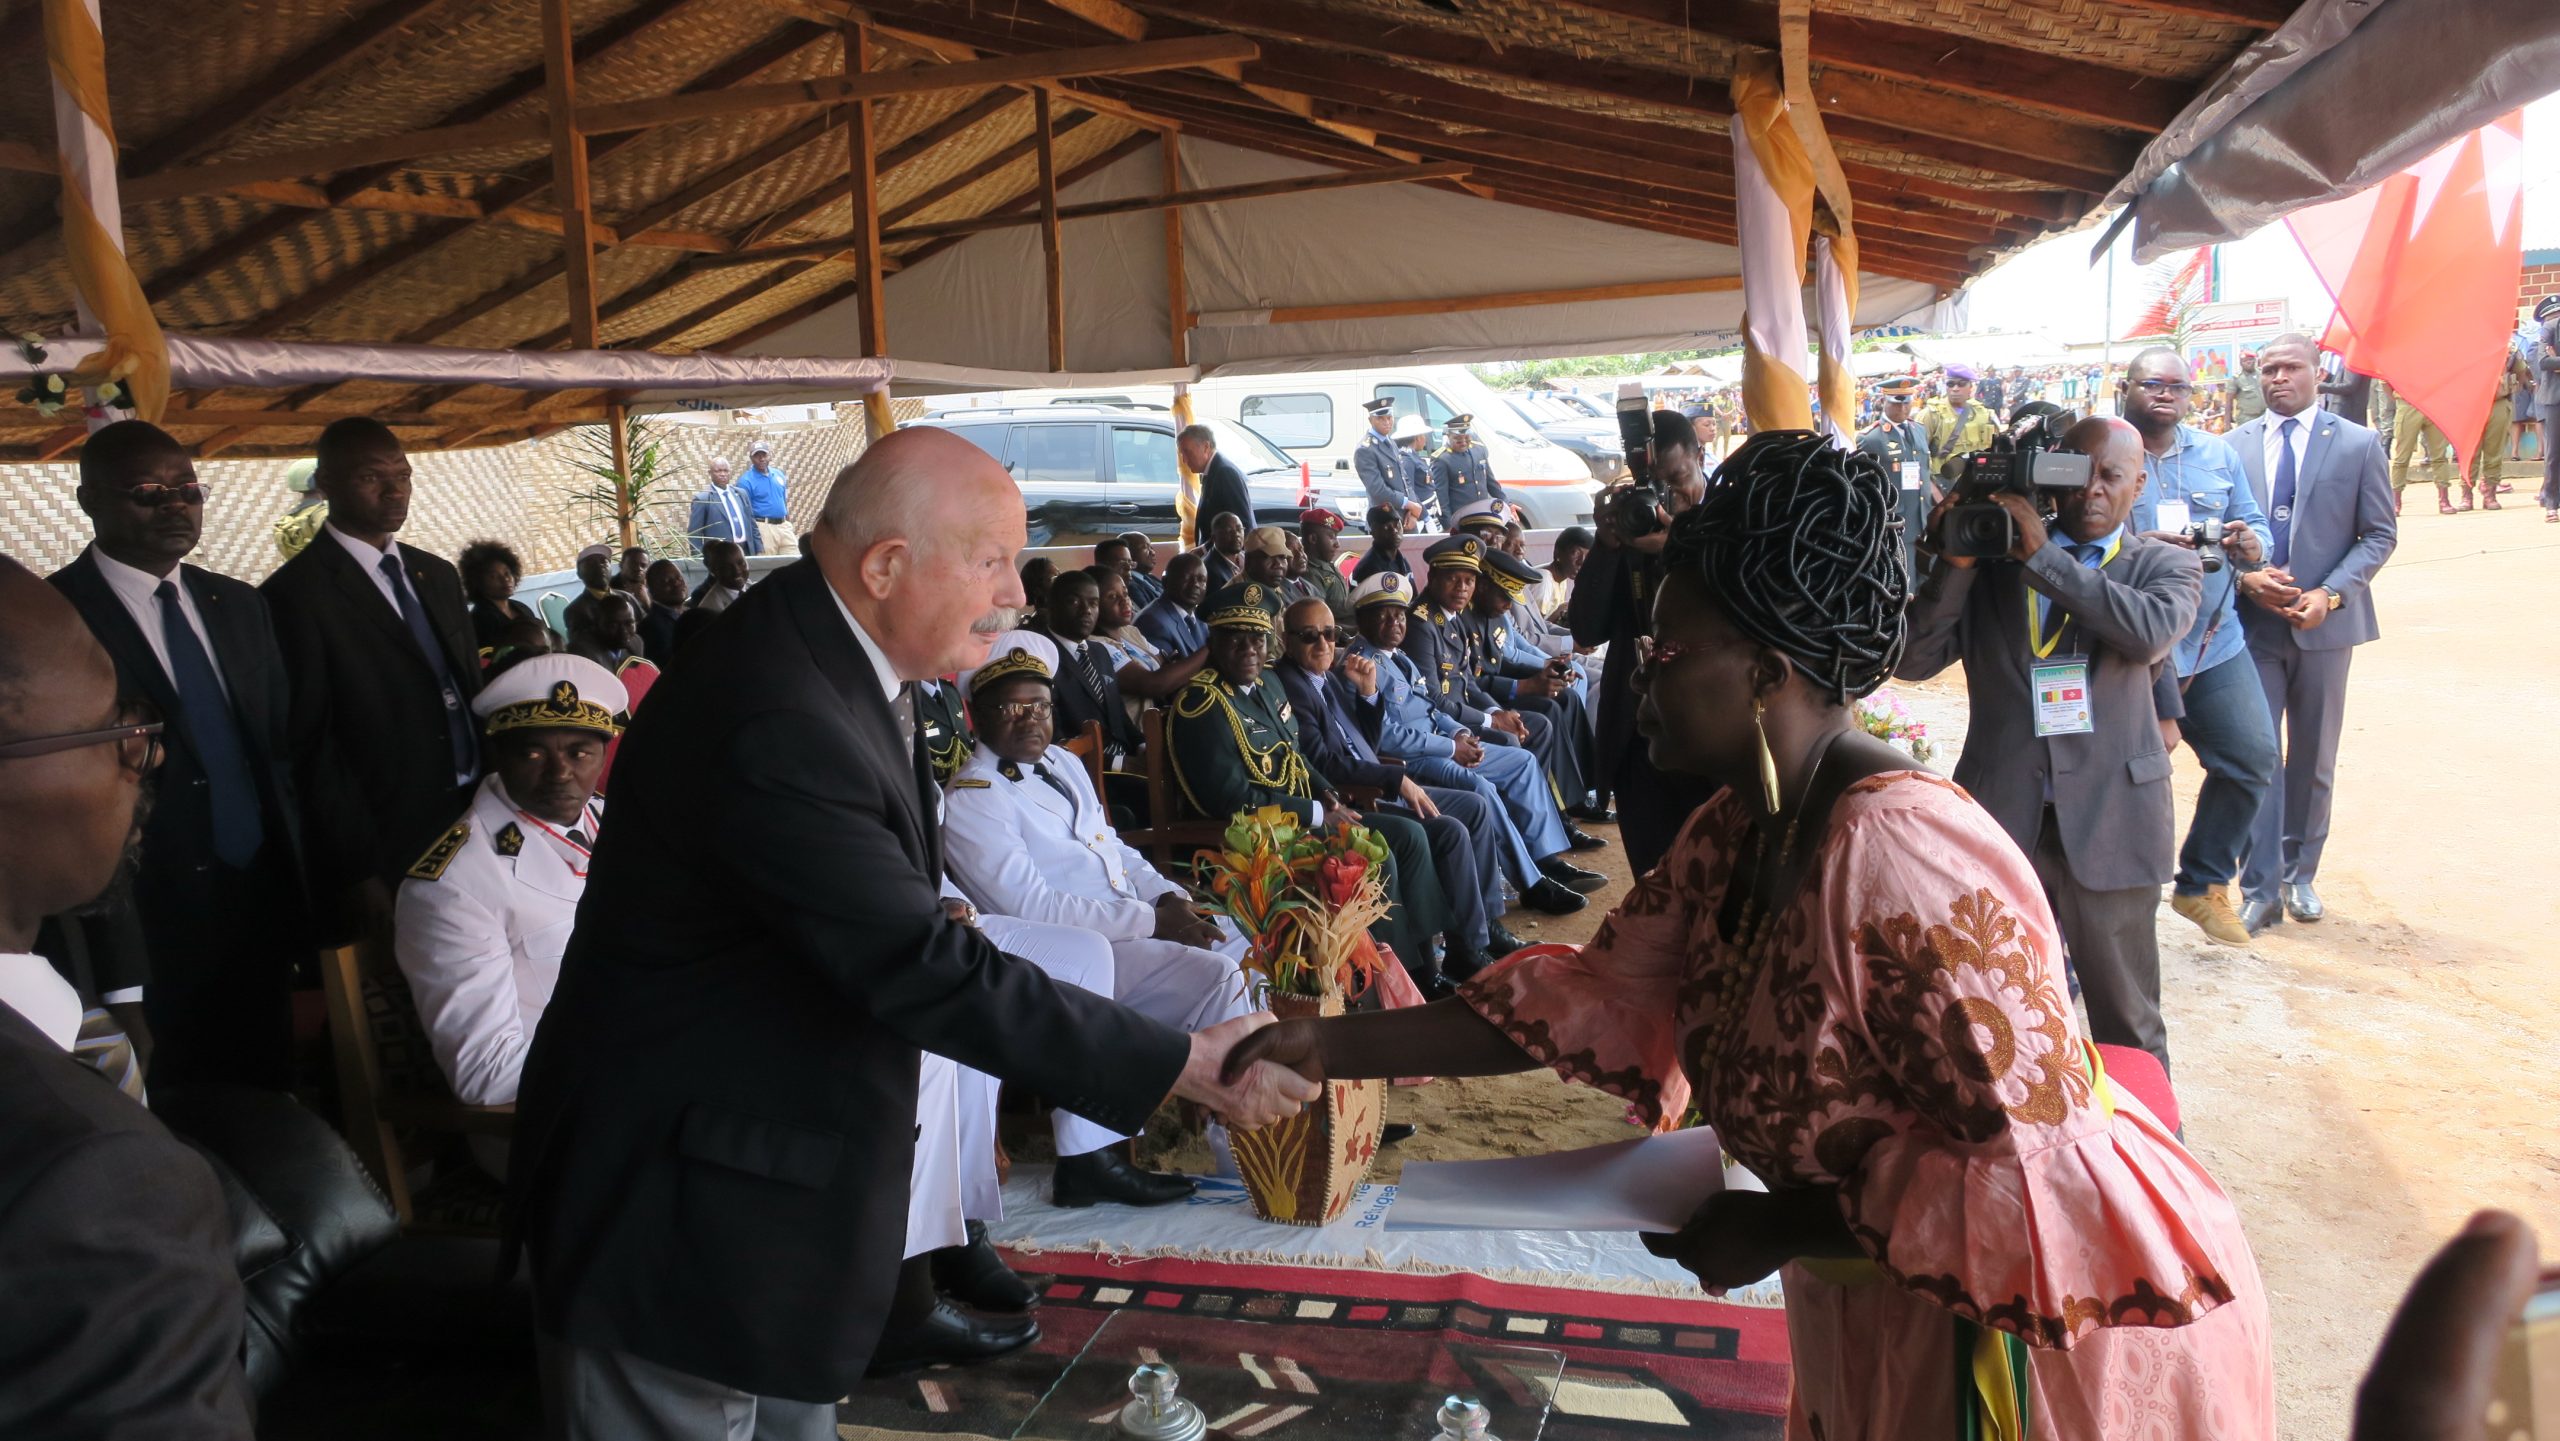 Le Grand Maître en visite d’État au Cameroun